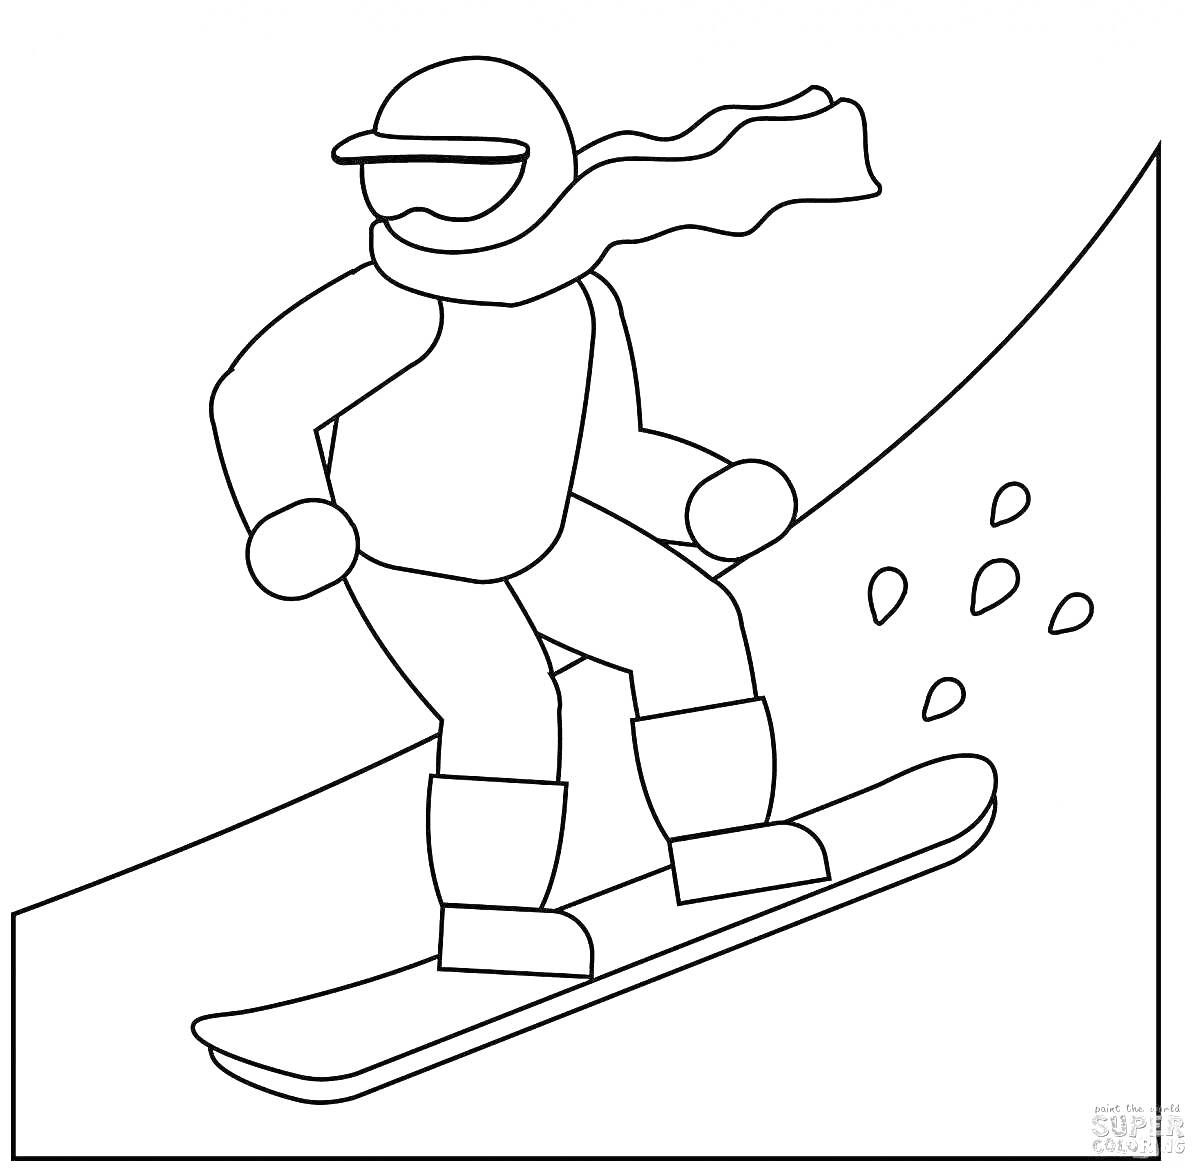 Раскраска Сноубордист, спускающийся с горы, в защитной экипировке и шарфе